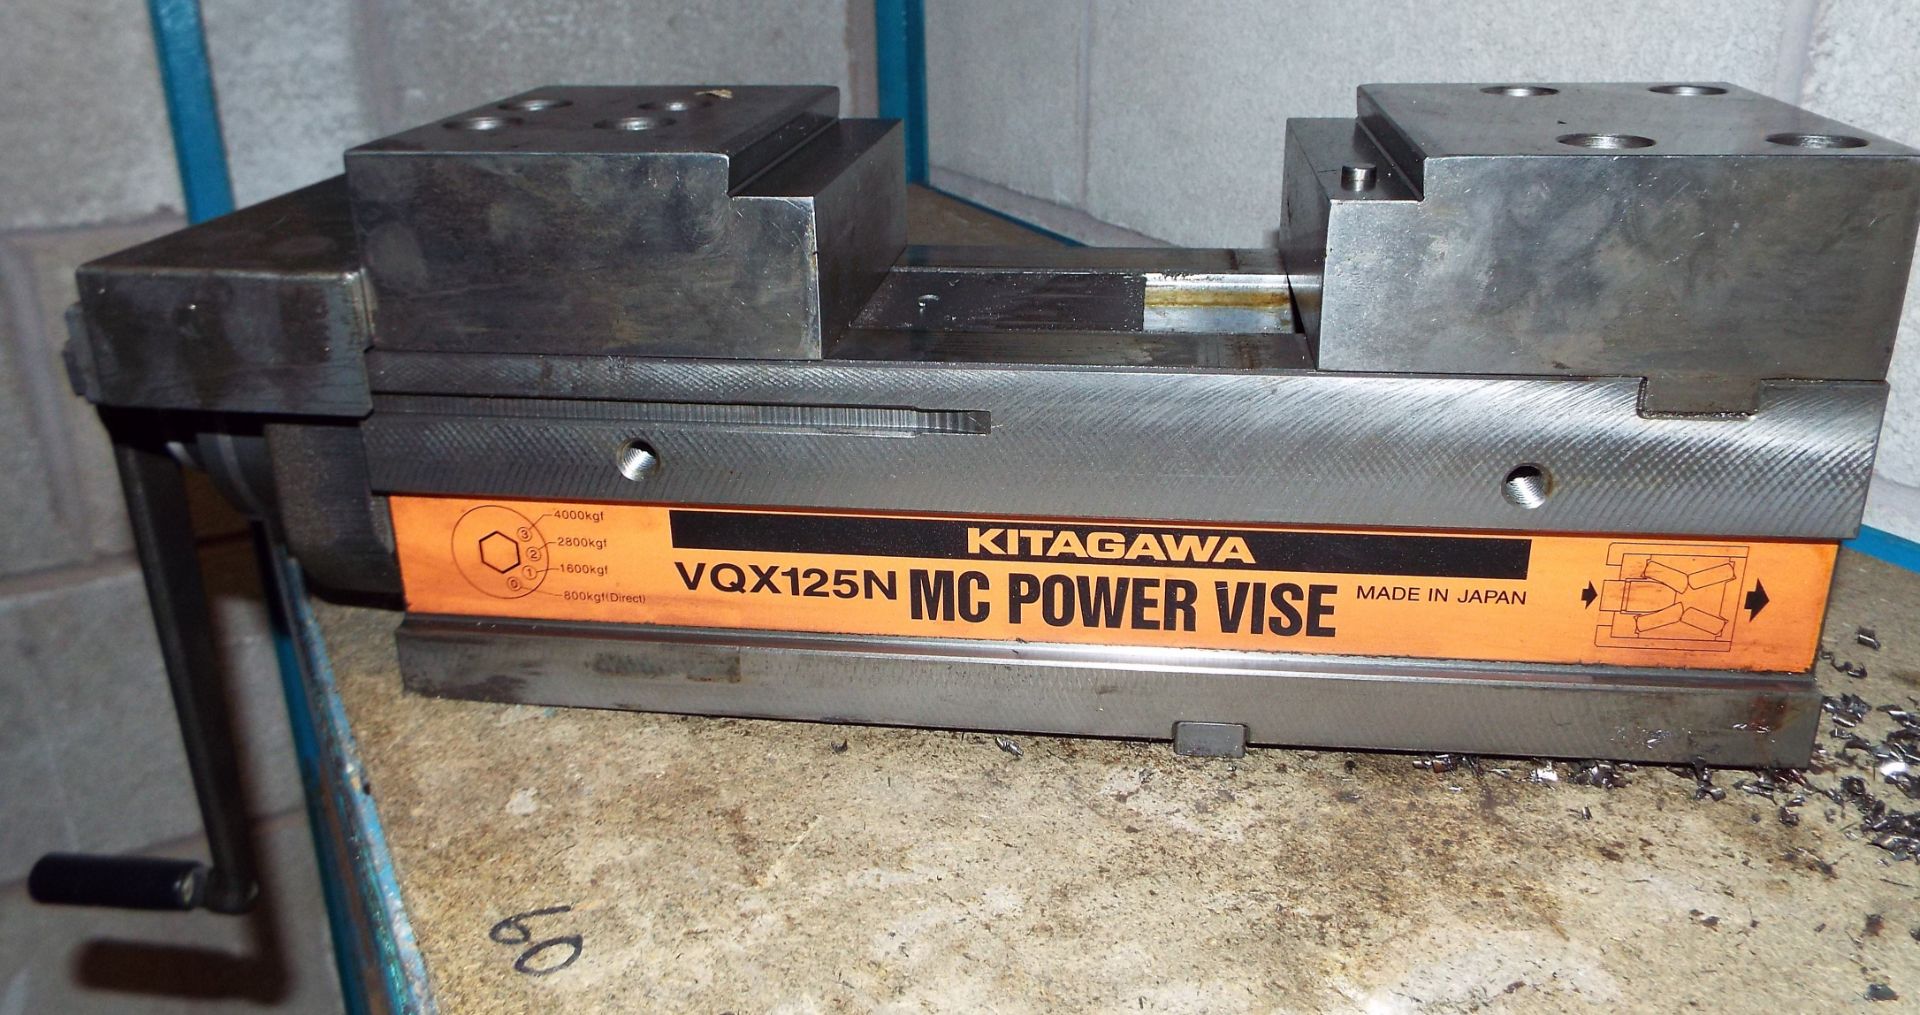 Kitigawa VQX125N MC Power Vise. - Image 2 of 3